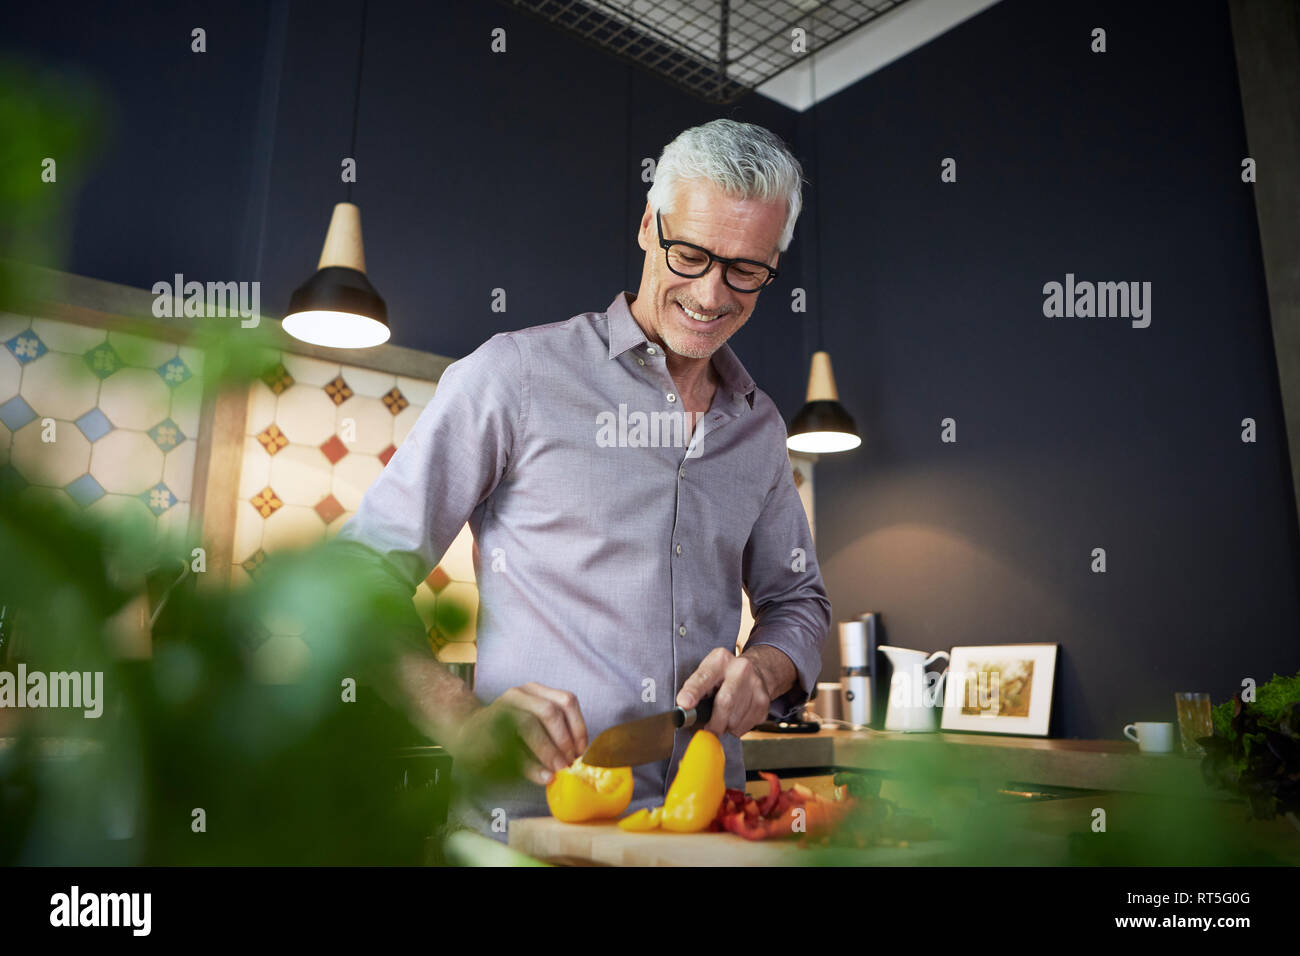 Smiling young man chopping poivron dans Cuisine Banque D'Images